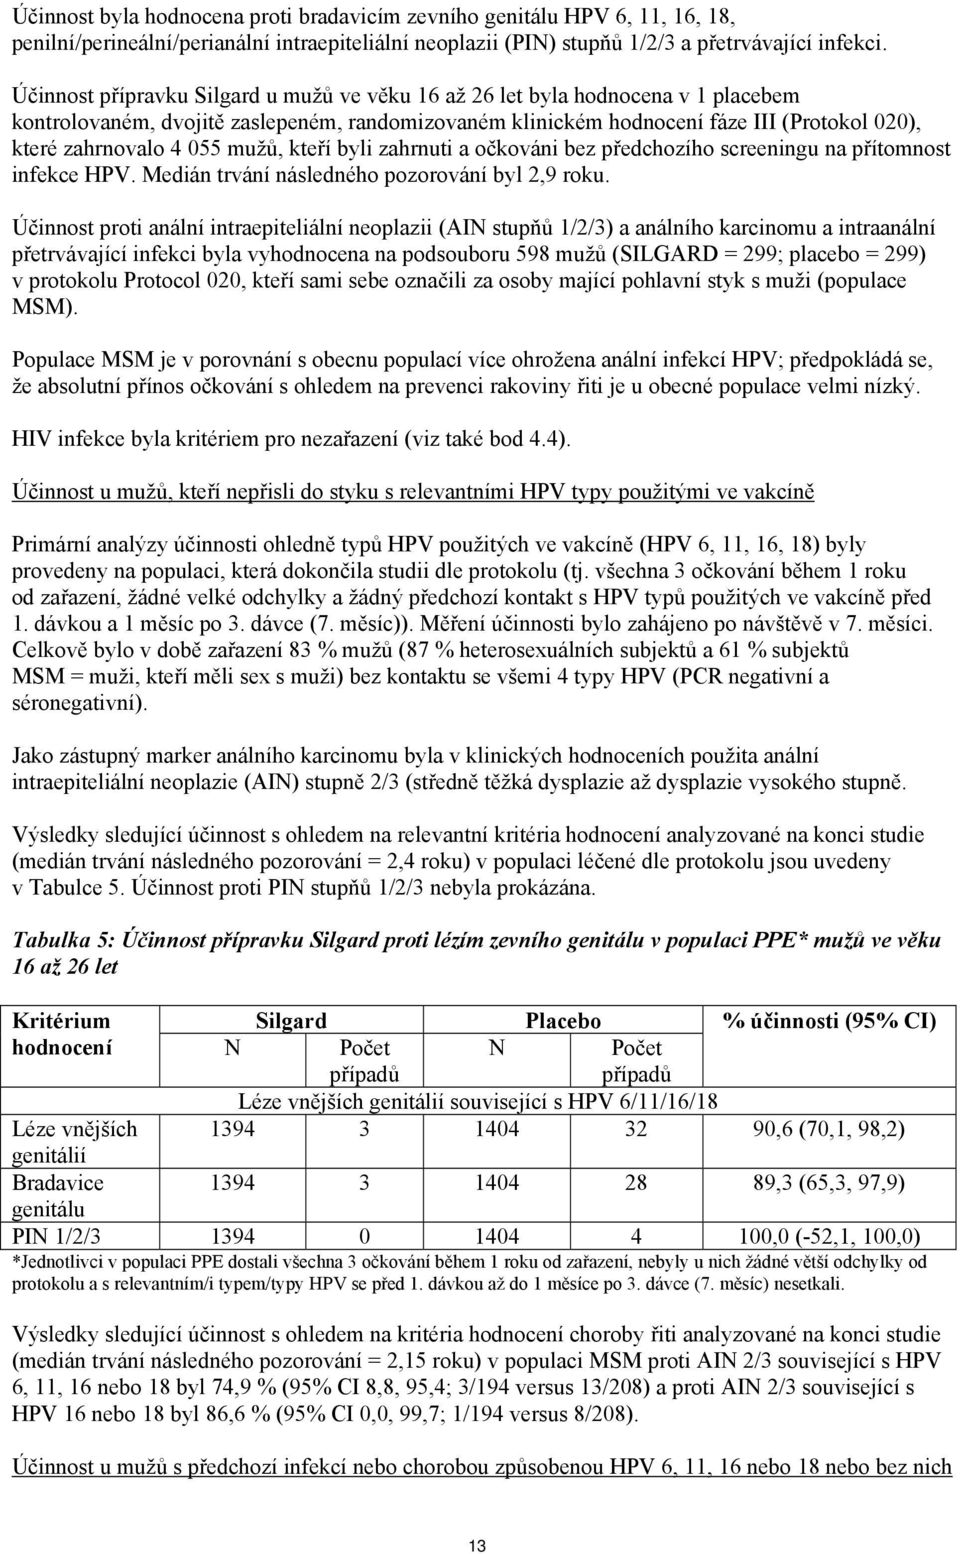 055 mužů, kteří byli zahrnuti a očkováni bez předchozího screeningu na přítomnost infekce HPV. Medián trvání následného pozorování byl 2,9 roku.